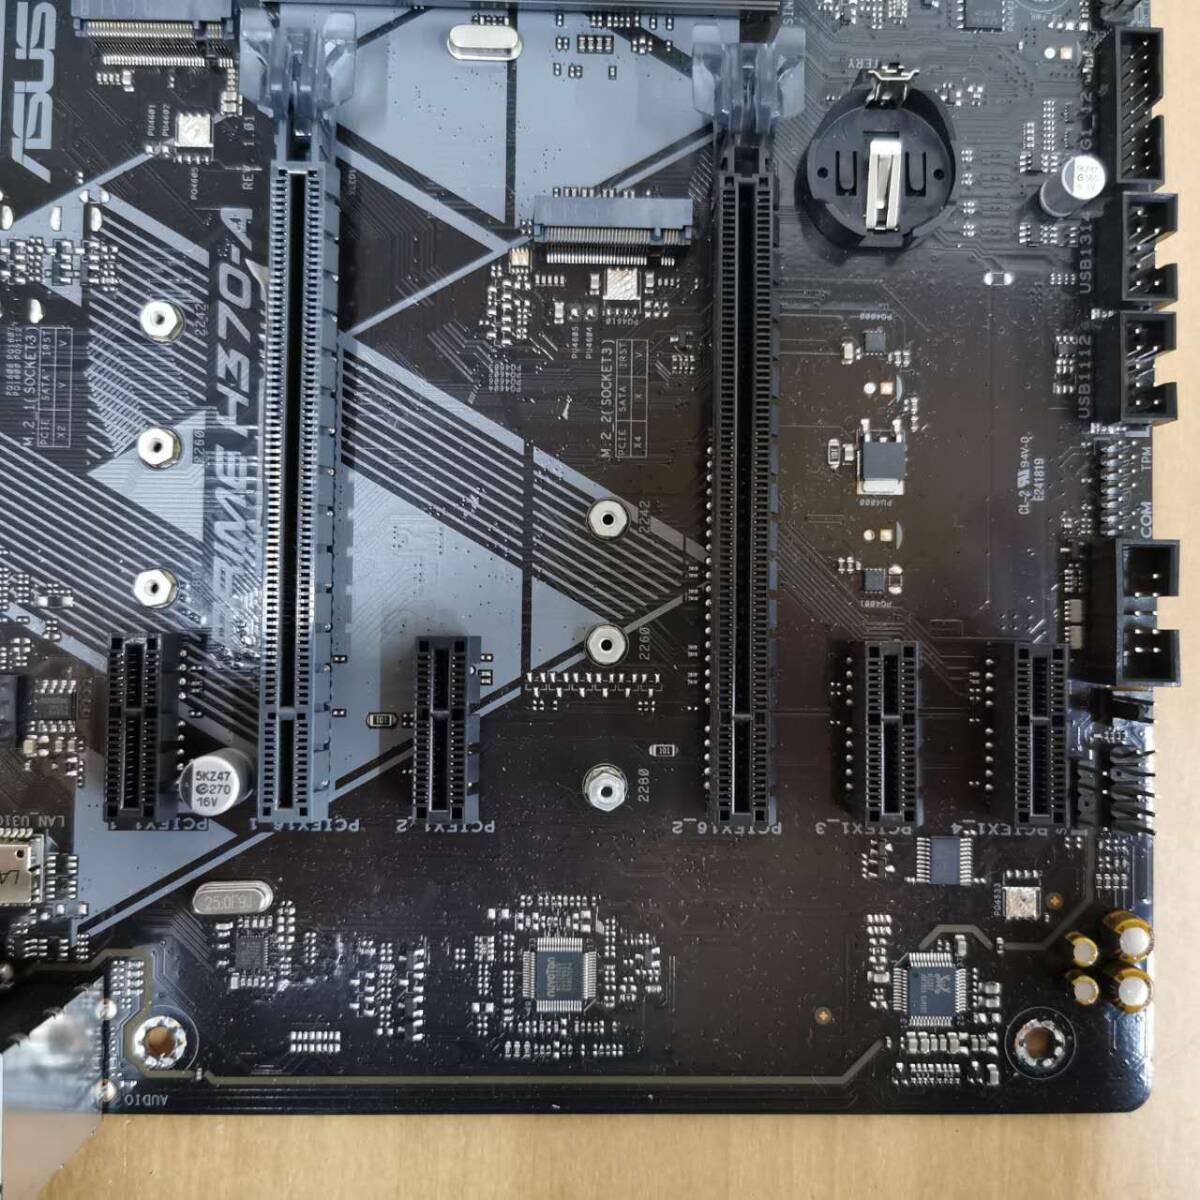 ASUS PRIME H370-A/ATX материнская плата /(LGA1151)INTEL no. 8,9 поколение CPU соответствует /PC детали собственное производство PC DIY ремонт материал * электризация,BIOS проверка только Junk 